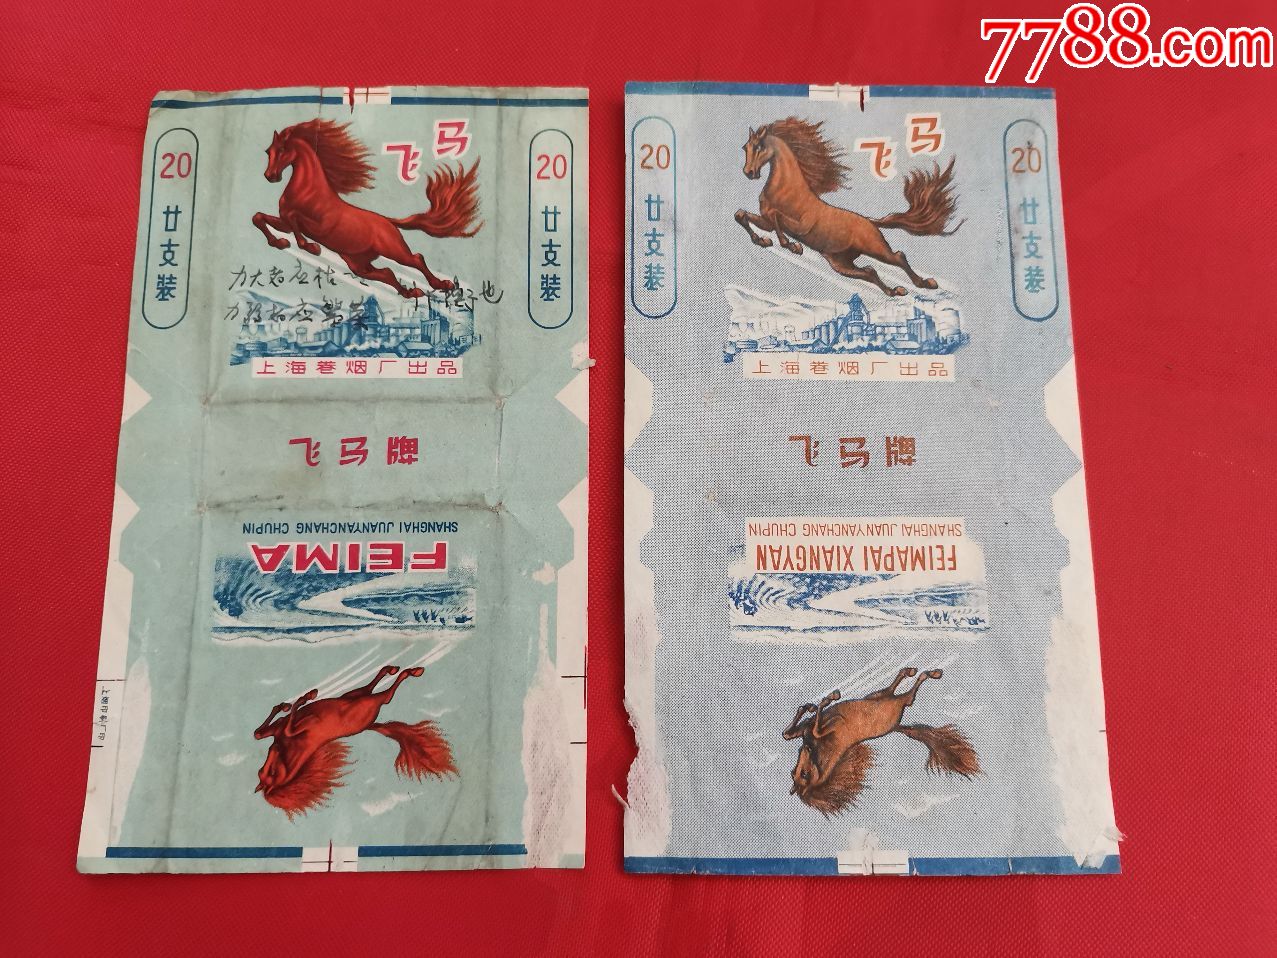 飞马牌香烟(上海卷烟厂出品)2种颜色不同